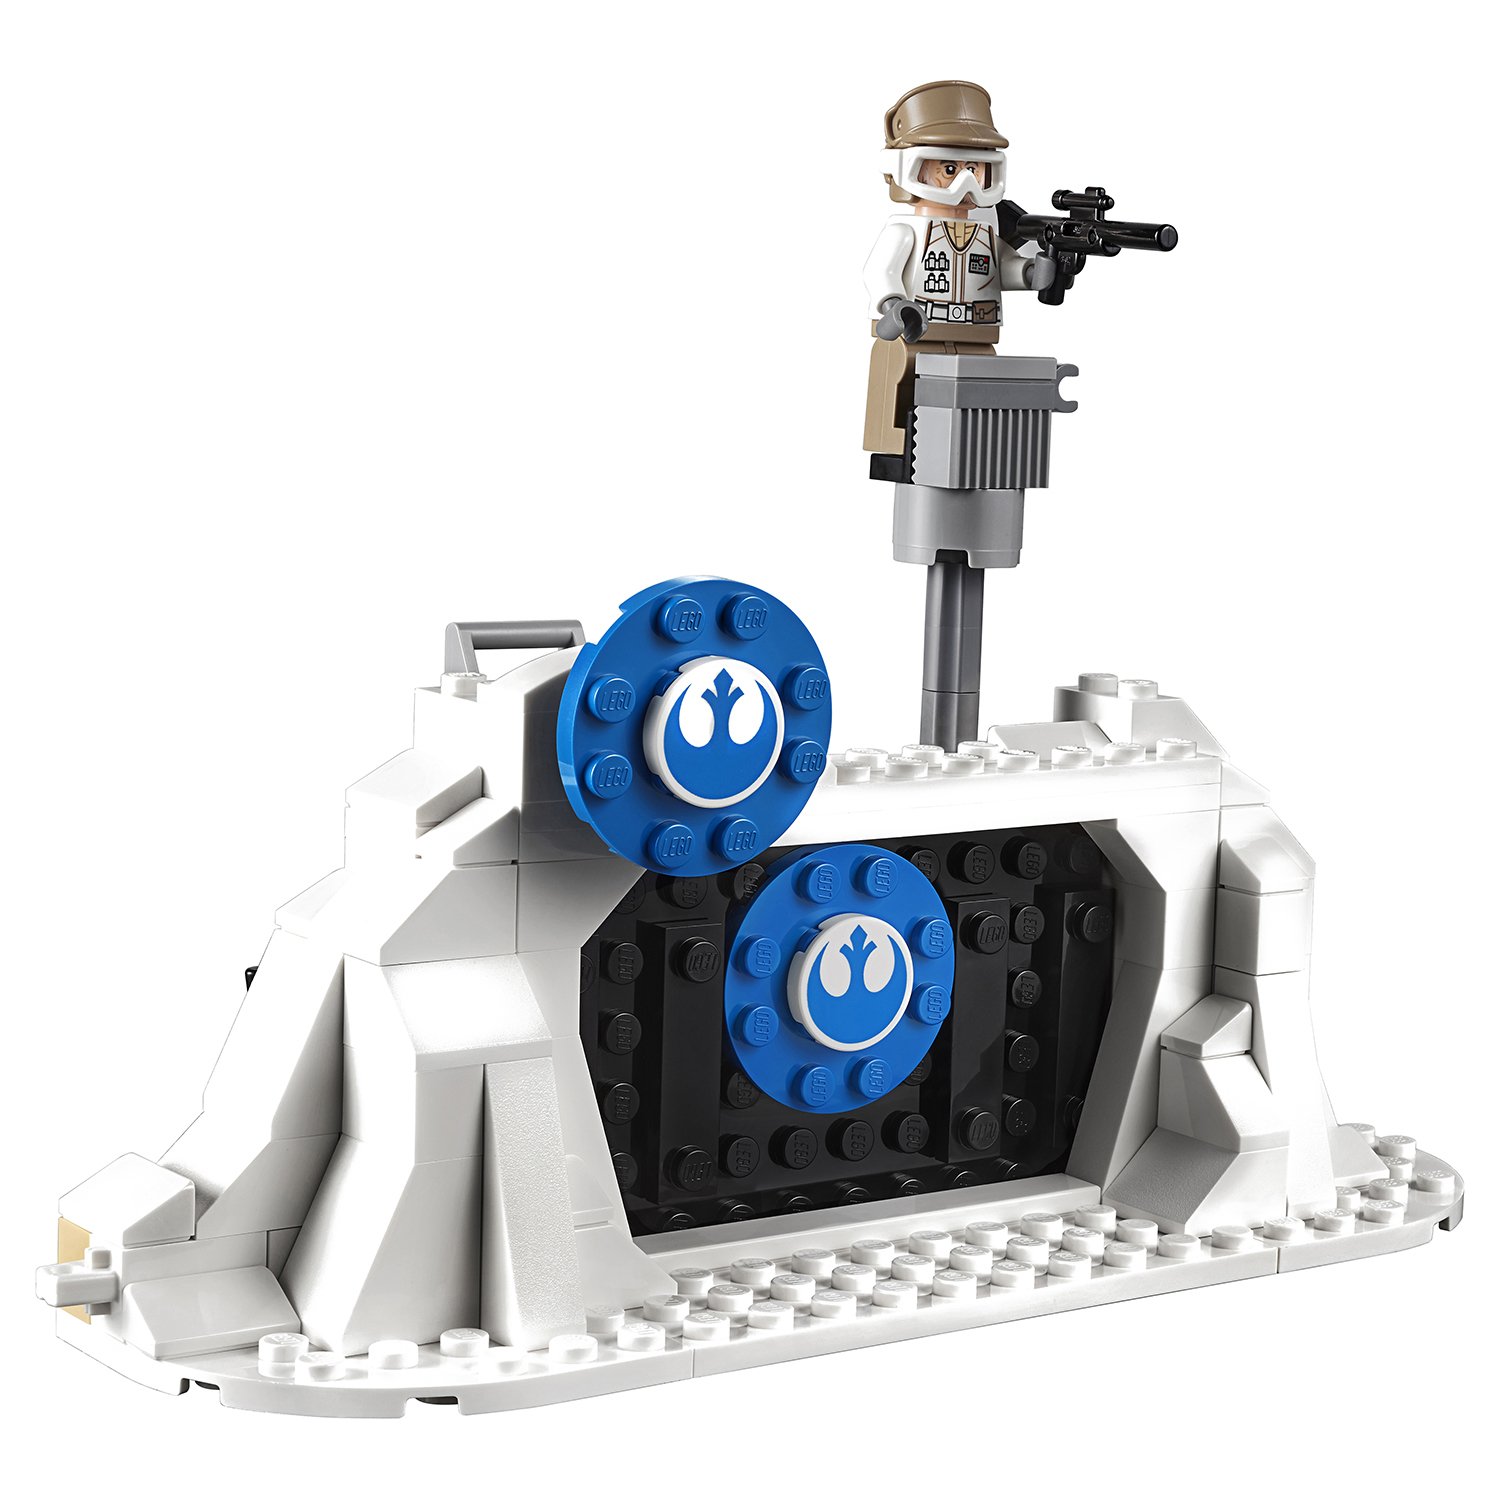 Конструктор Lego®  Star Wars - Защита базы Эхо   